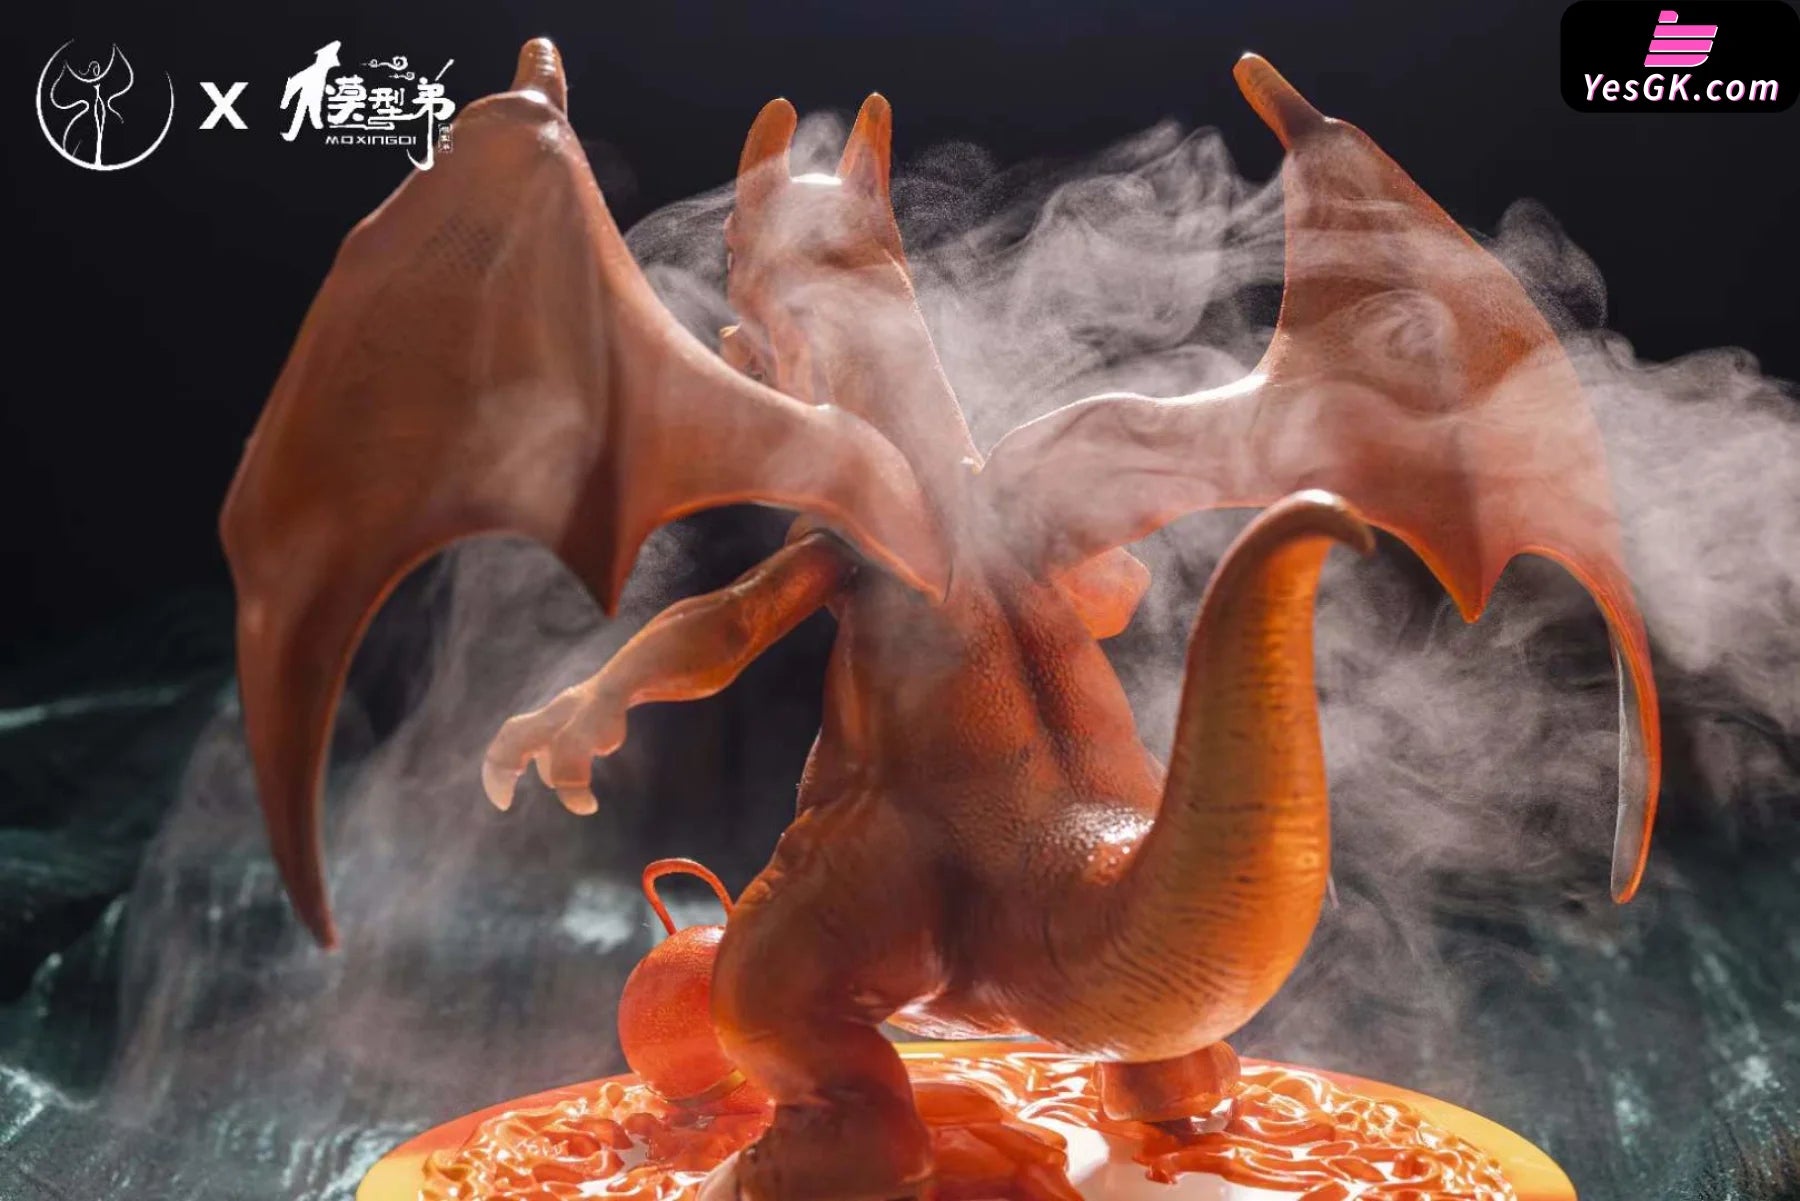 Pokémon Pixie #3 Charizard Statue - Bang Ying & Mo Xing Di Studio [Pre-Order]